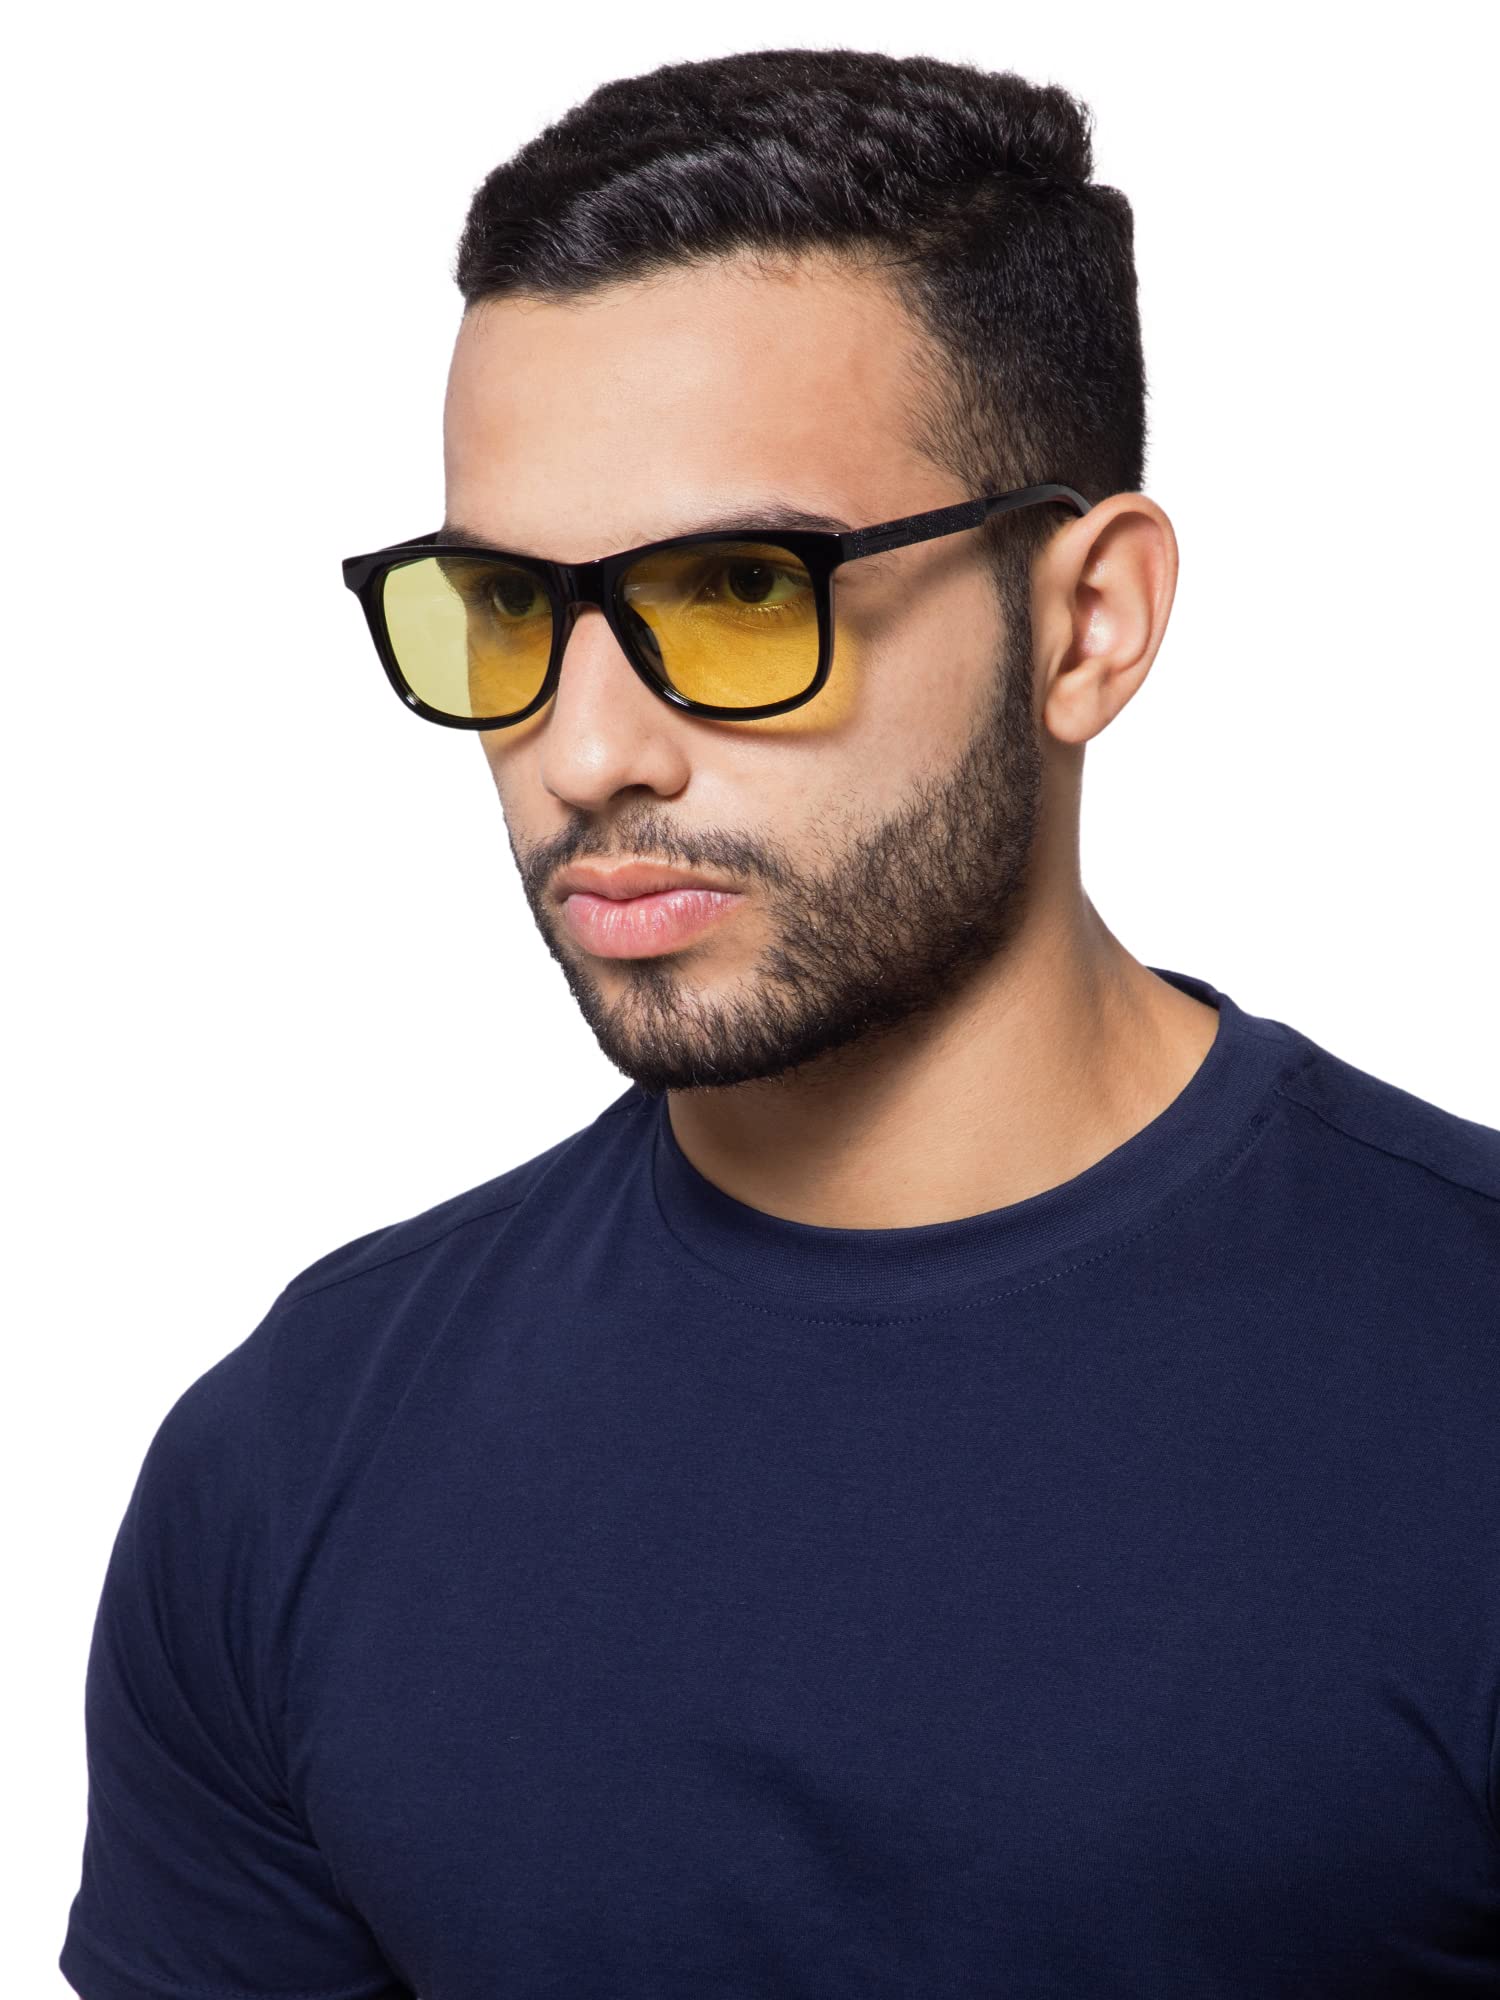 Intellilens Wayfarer Polarized & UV Protected Sunglasses For Men & Women | Goggles for Men & Women (Black) (54-18-134)